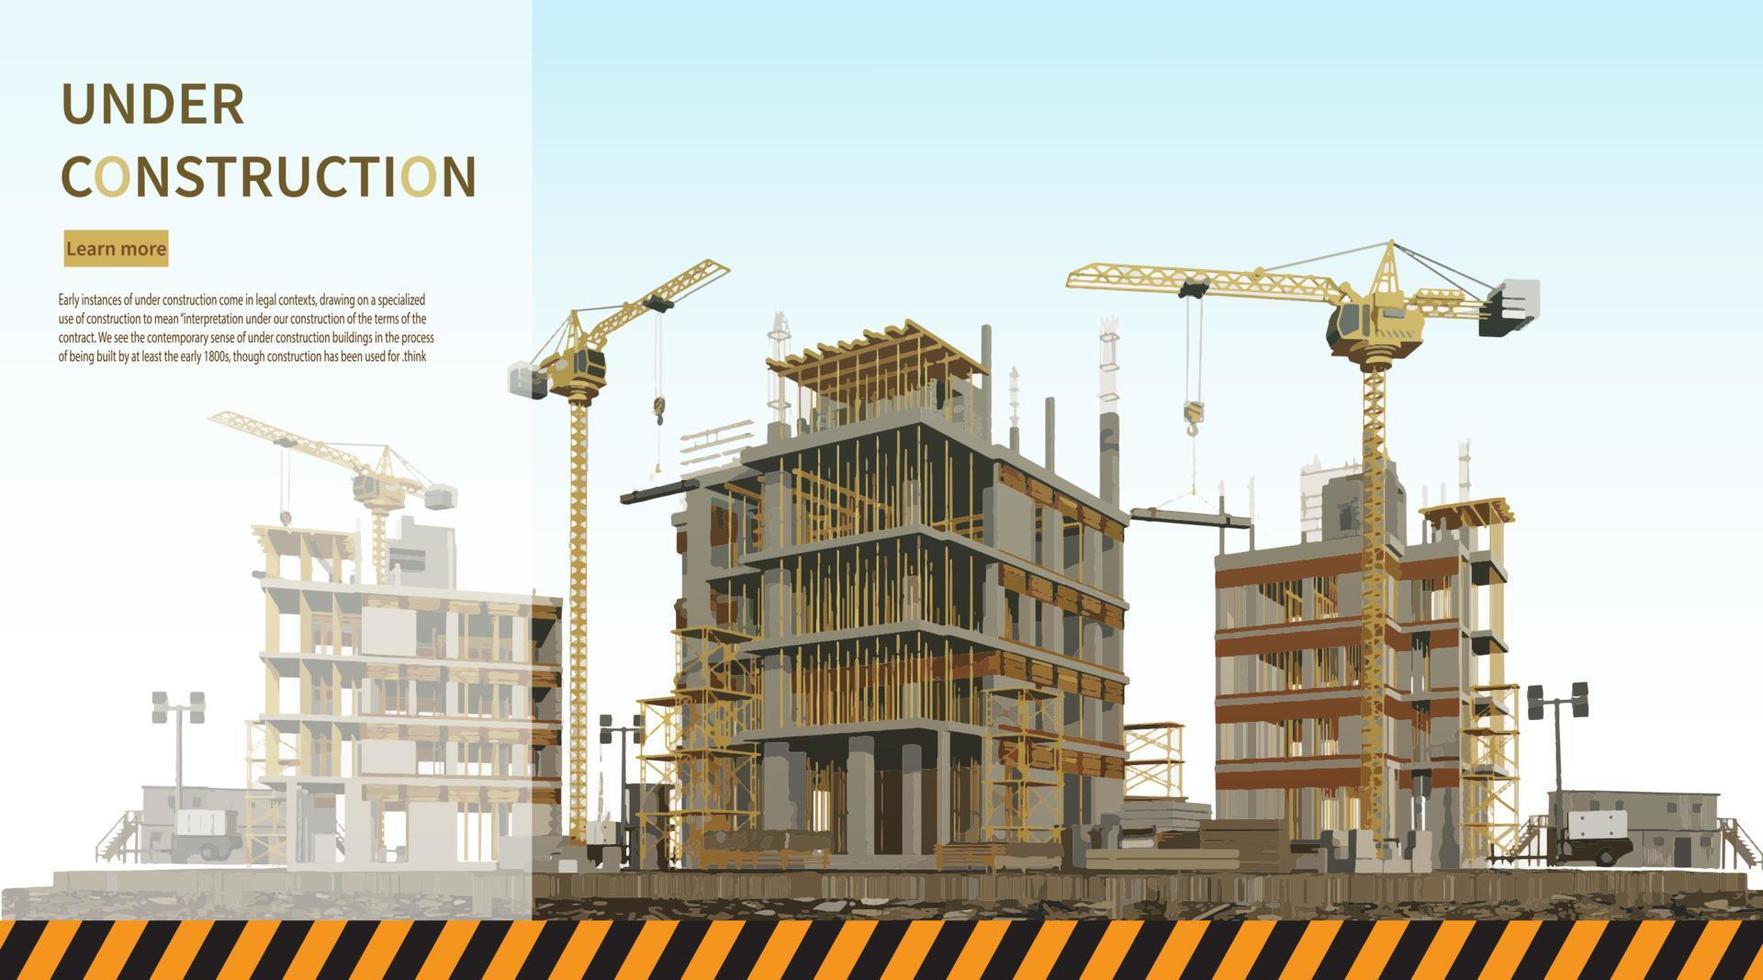 chantier de construction avec une tour crane.vector illustration vecteur